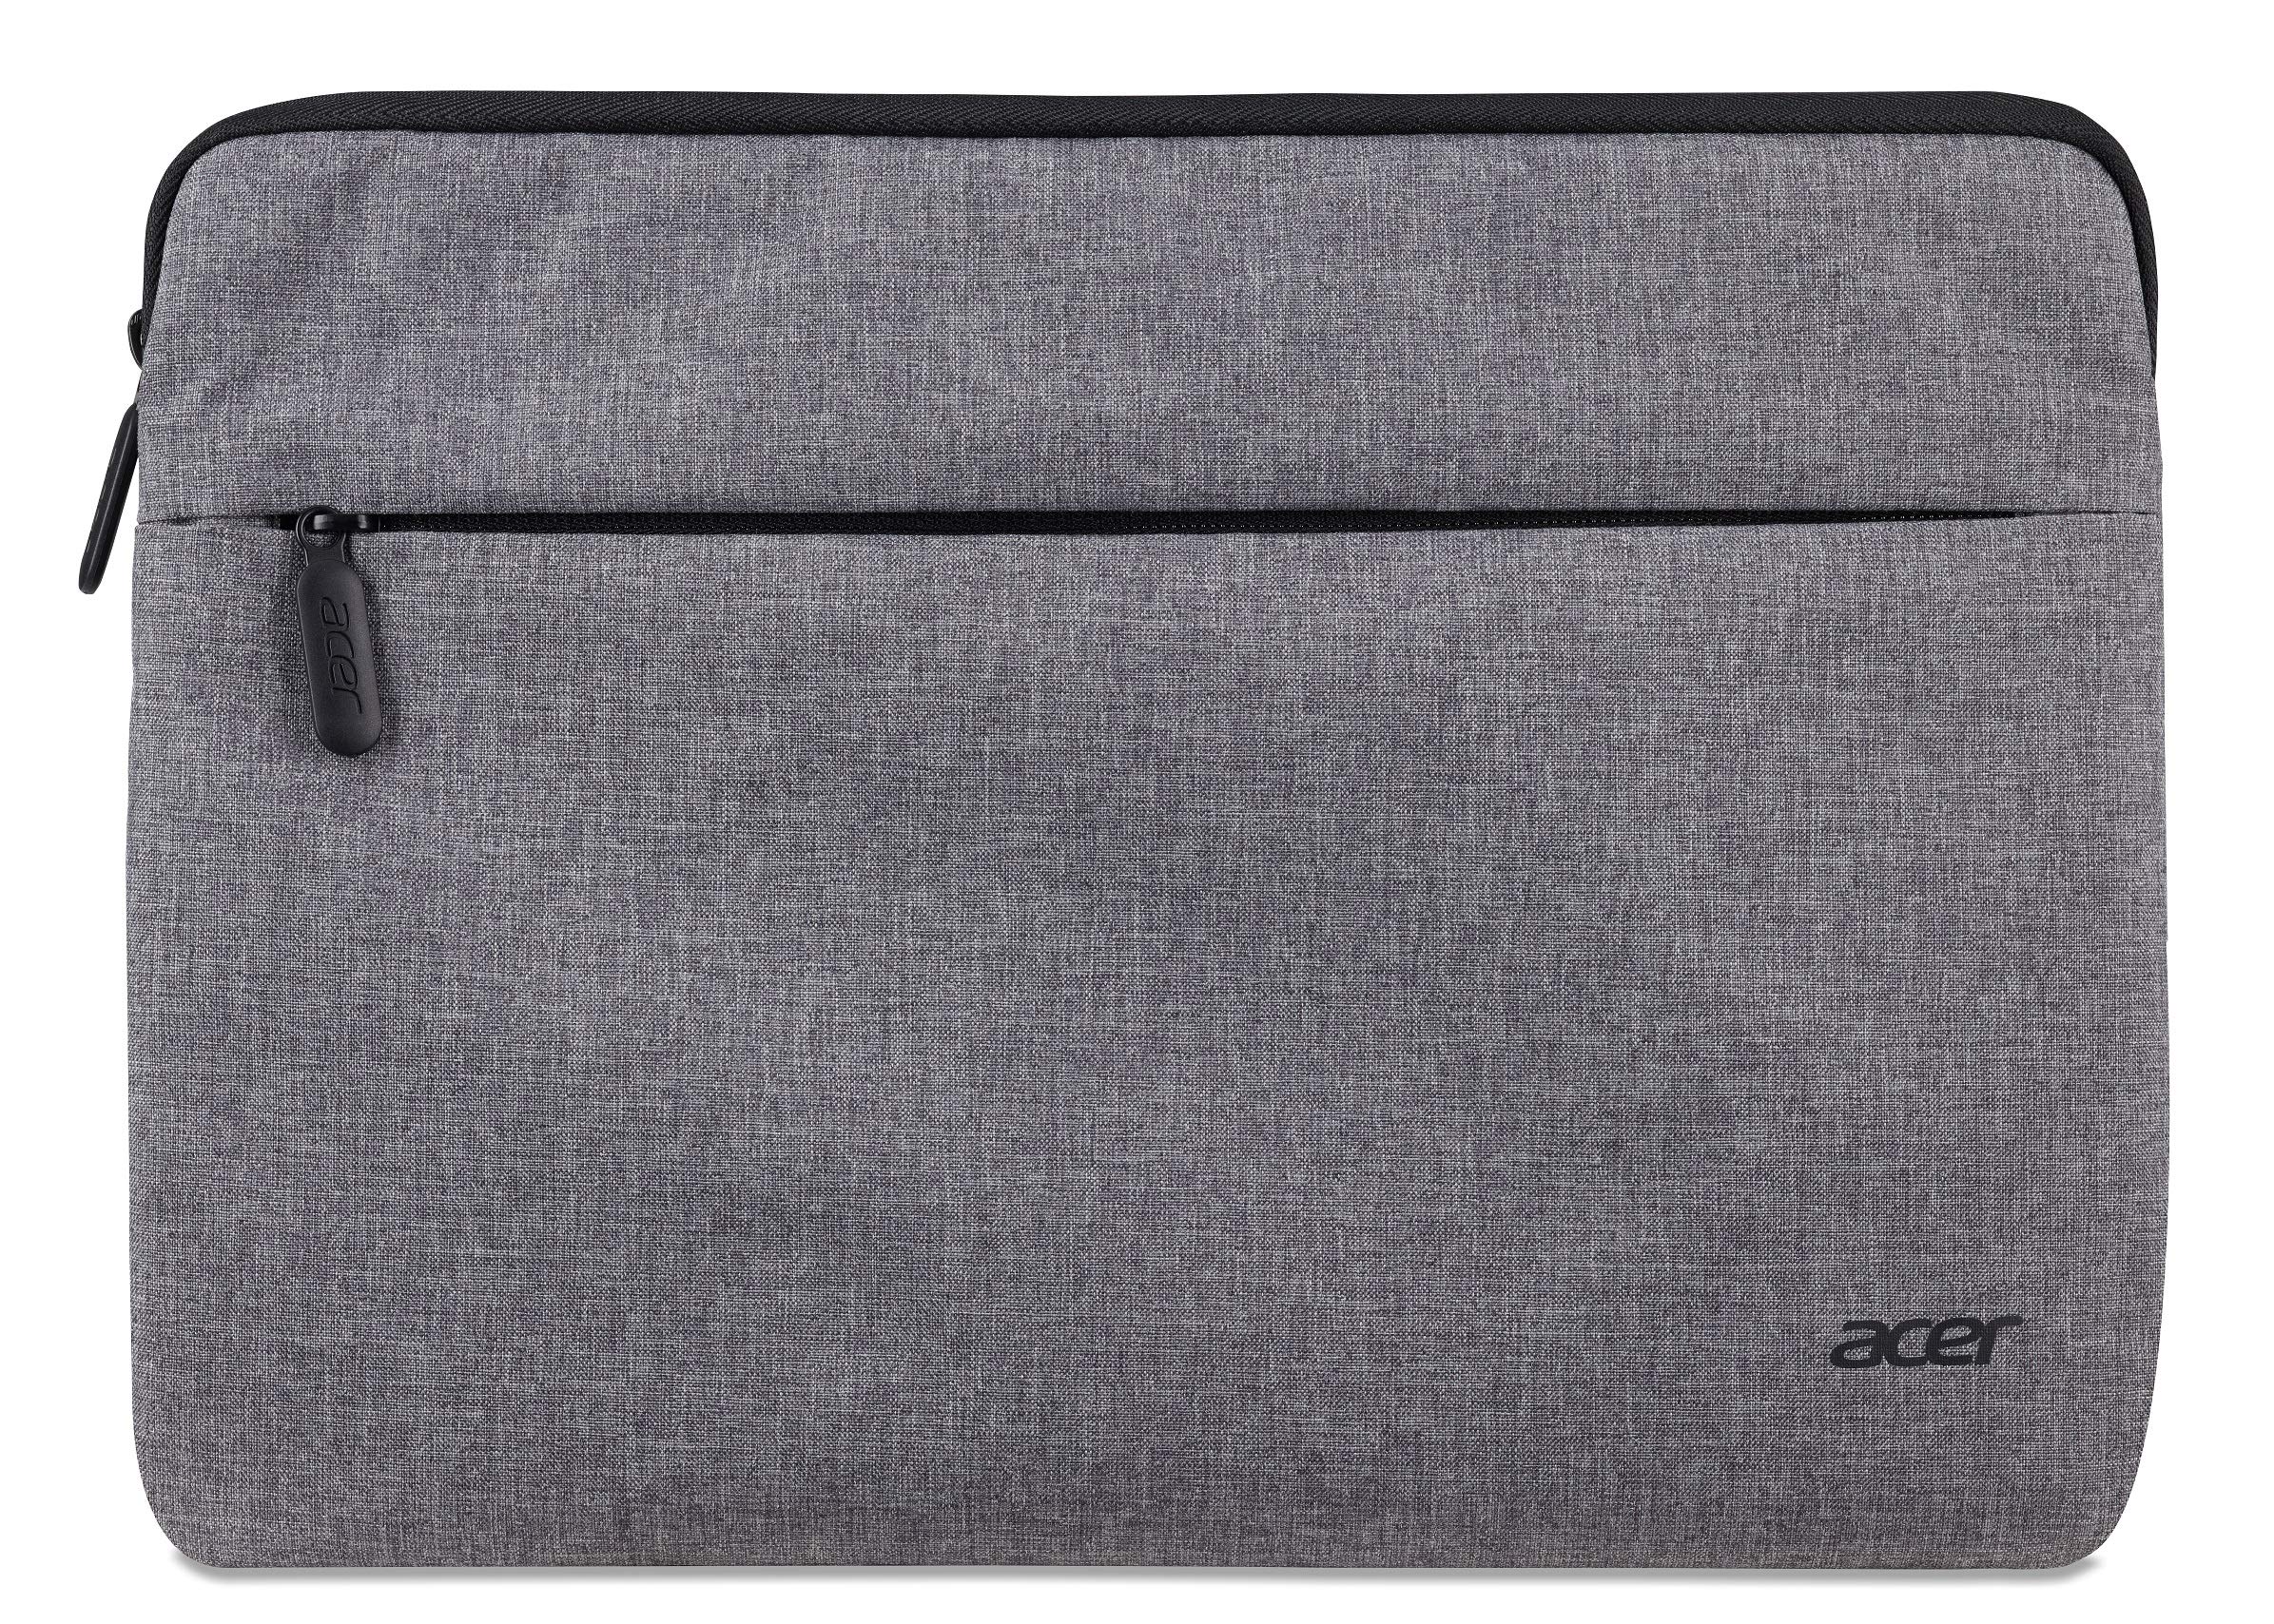 Acer Laptophülle - Laptoptasche 11 zoll, Notebook, Tablet, Laptop Tasche, Schutz vor Schmutz und Stoßschäden, extra Fronttasche, hellgrau